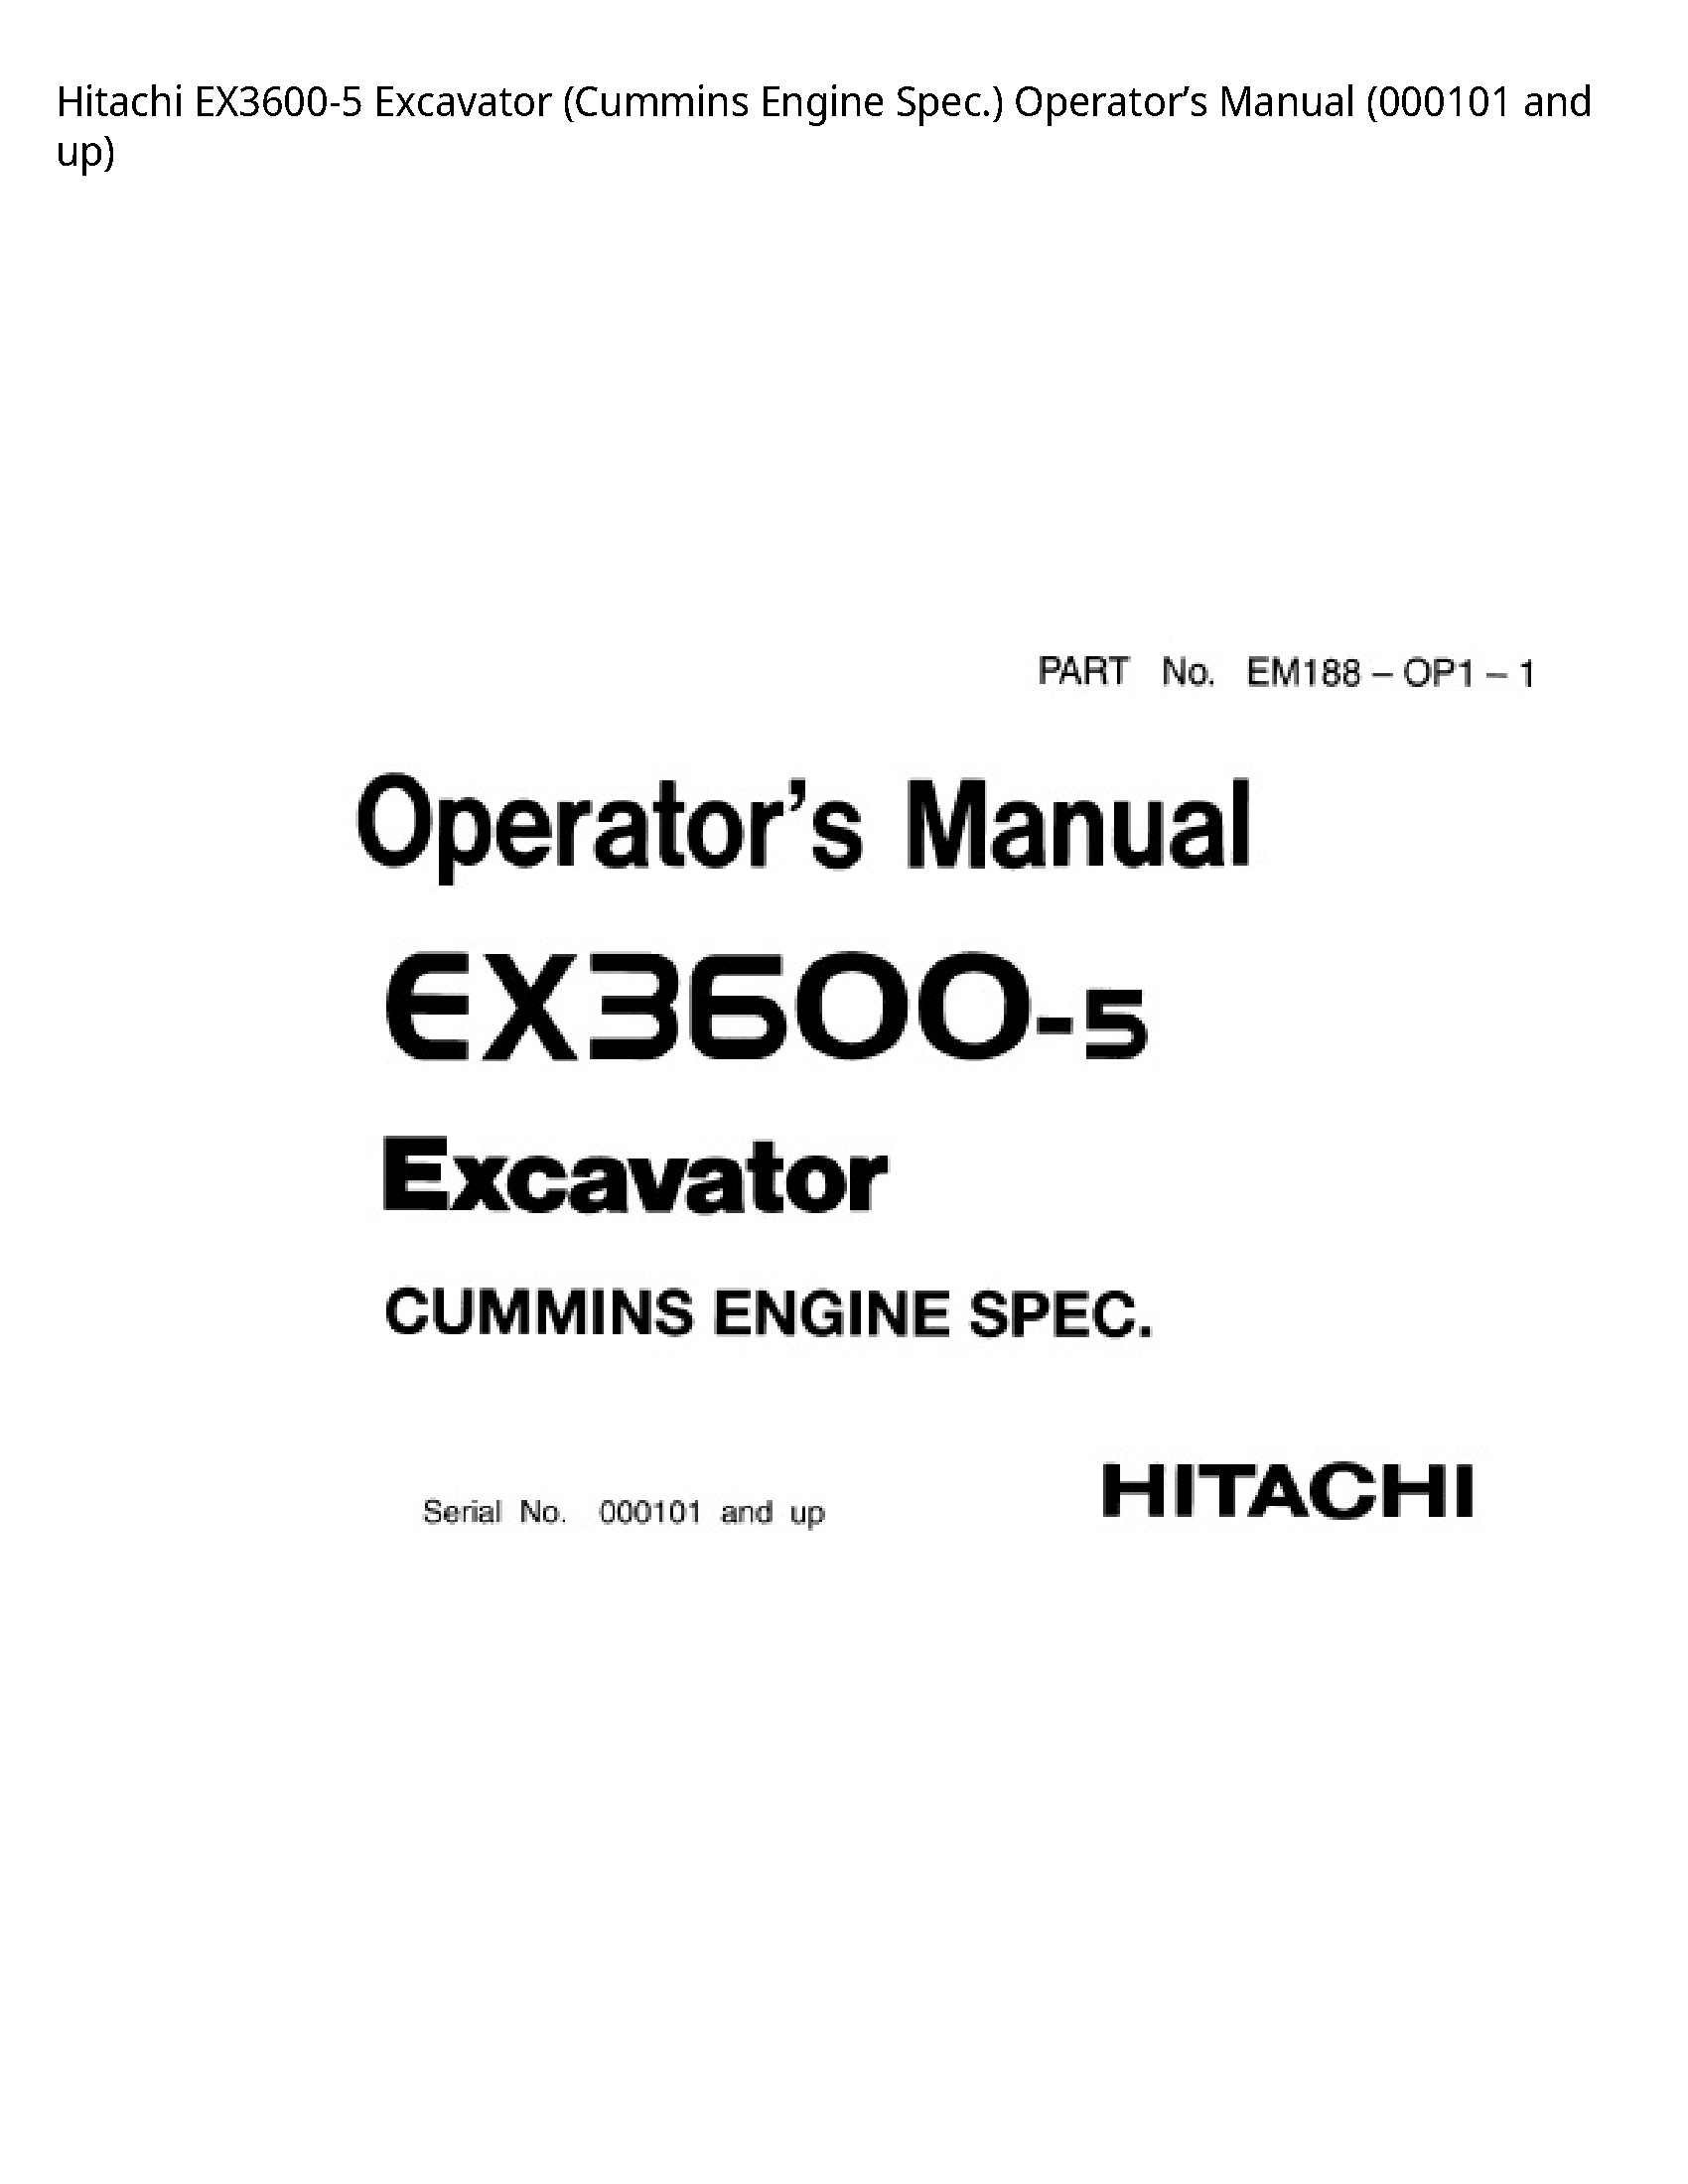 Hitachi EX3600-5 Excavator (Cummins Engine Spec.) Operator’s manual